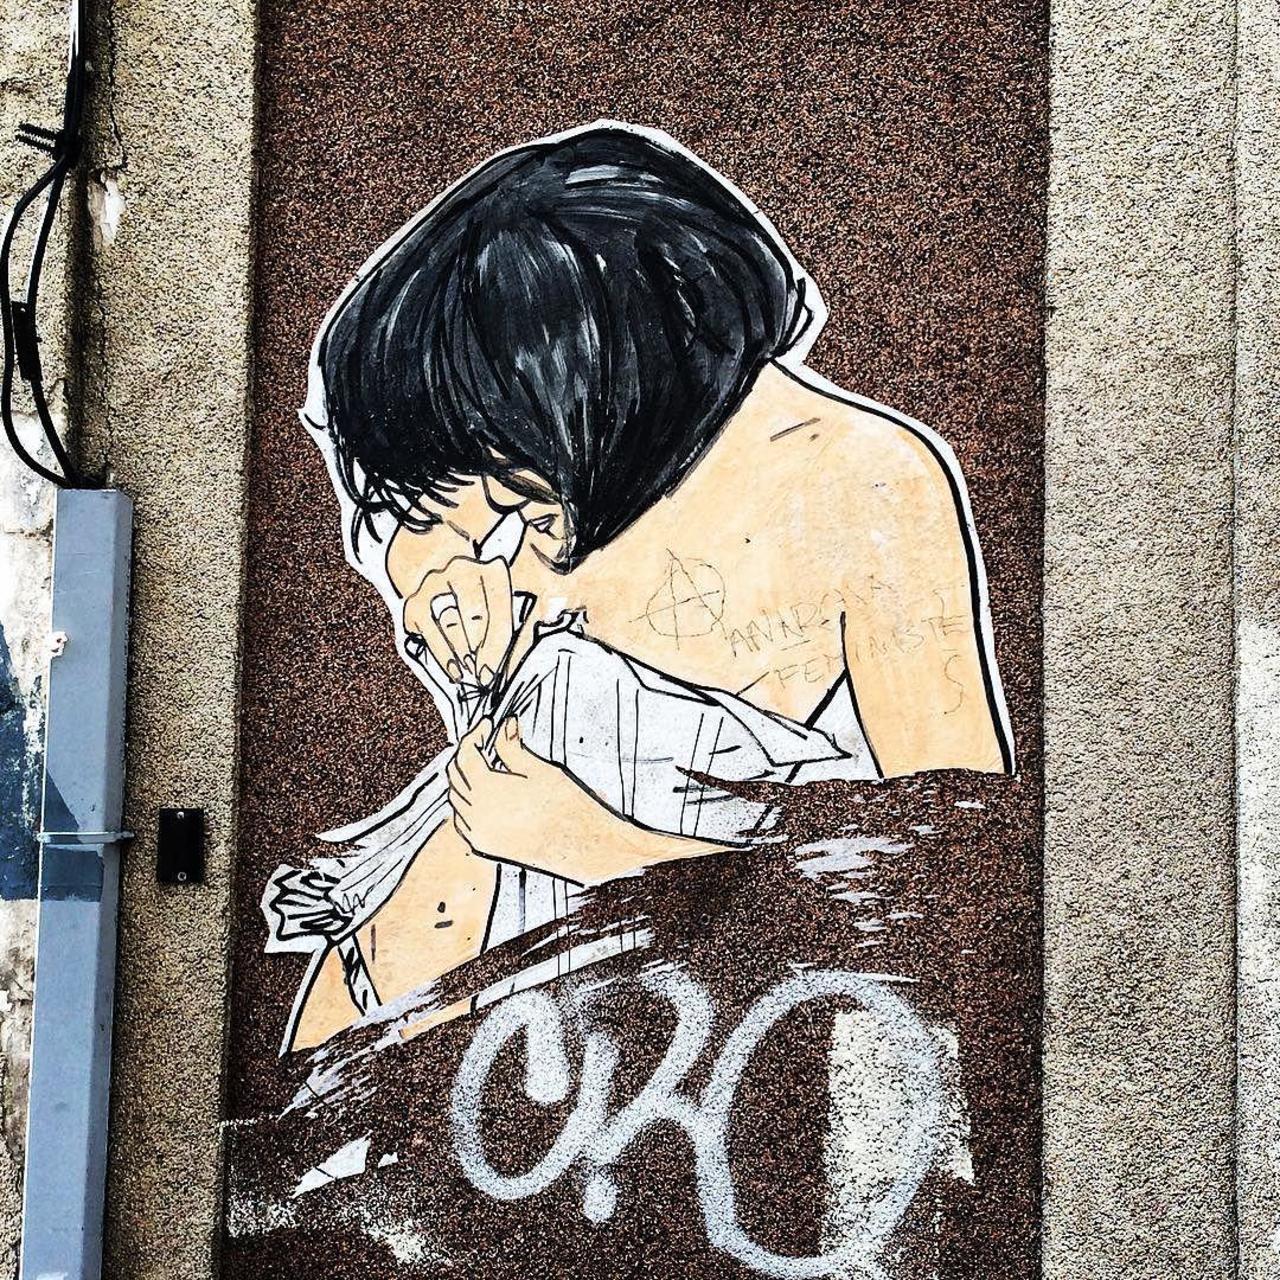 circumjacent_fr: #Paris #graffiti photo by julosteart http://ift.tt/1Lvi1ii #StreetArt http://t.co/pgg46NPCe7